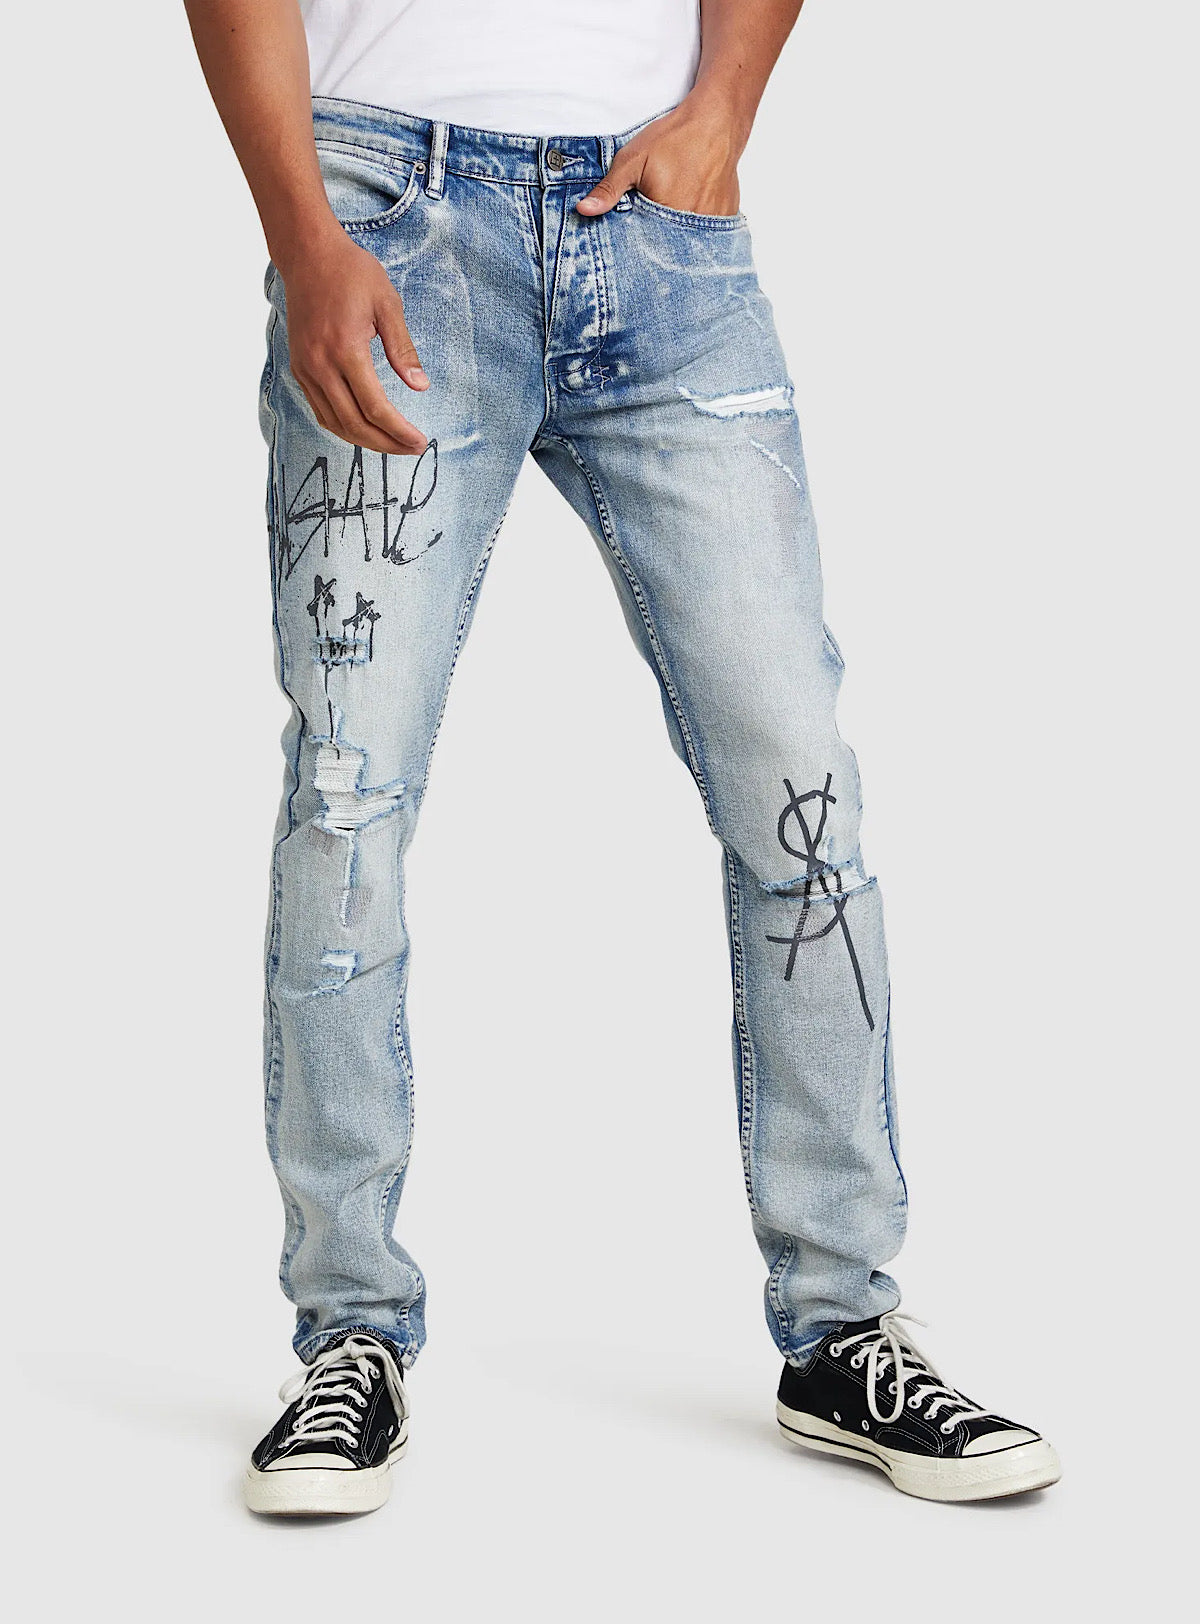 graffiti lv jeans｜TikTok Search